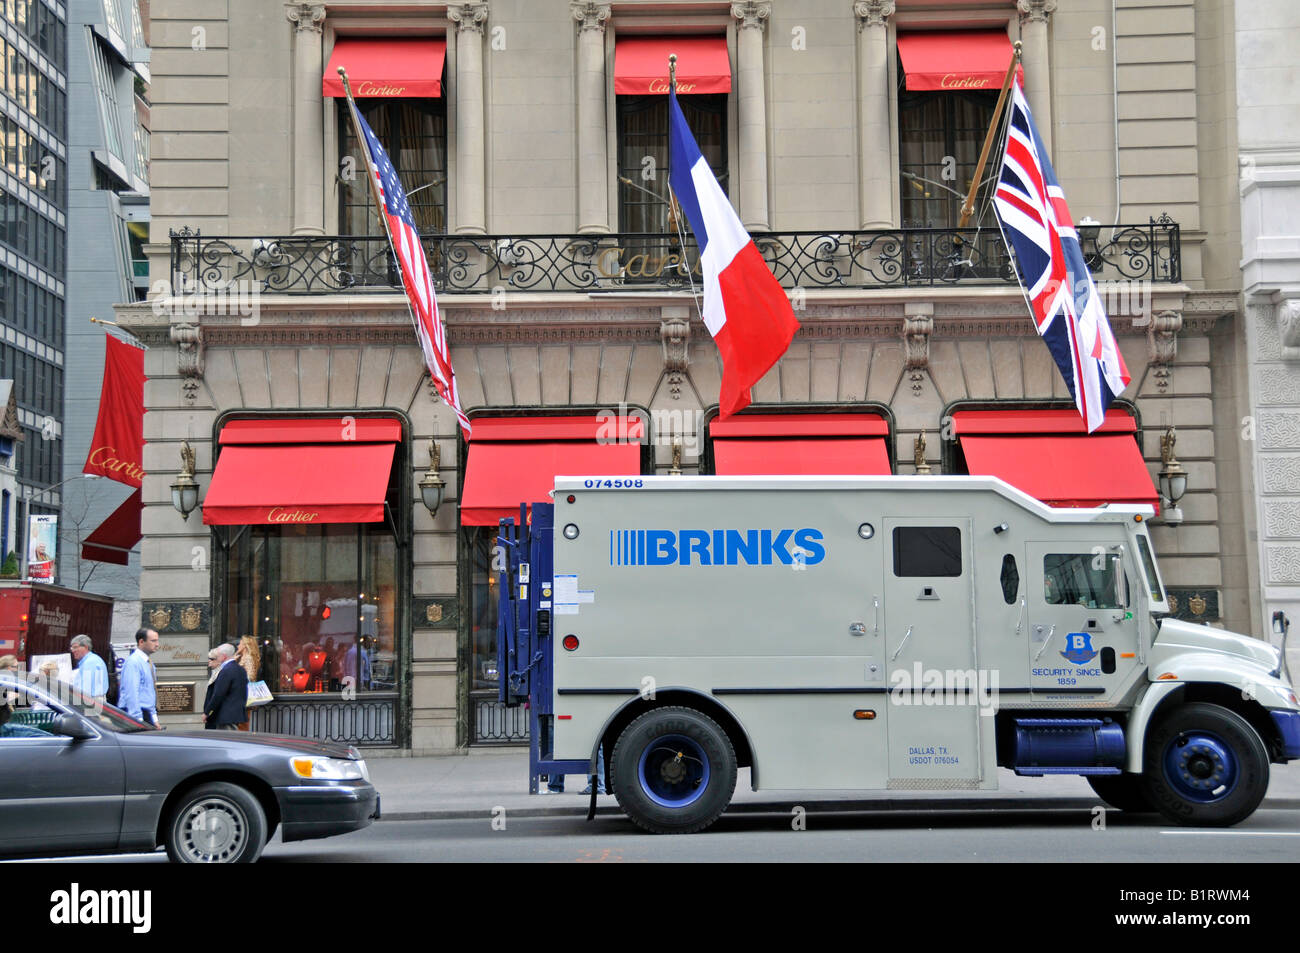 Magasin de vente en exclusivité des bijoux français et regarder la société Cartier derrière un véhicule de sécurité blindé, Brinks truck, Manh Banque D'Images